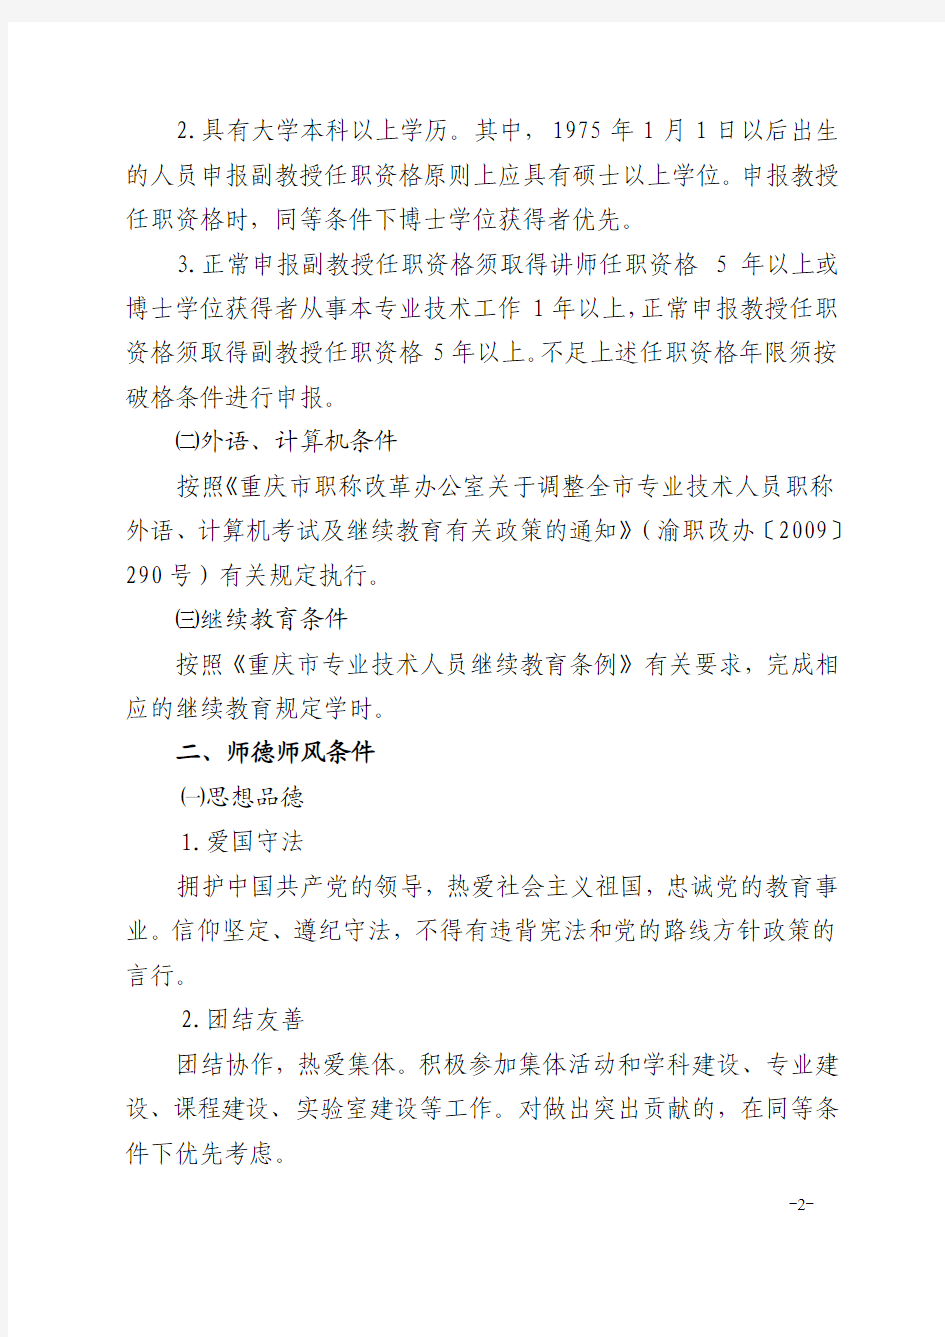 重庆市高校本科教师高级职称评审条件